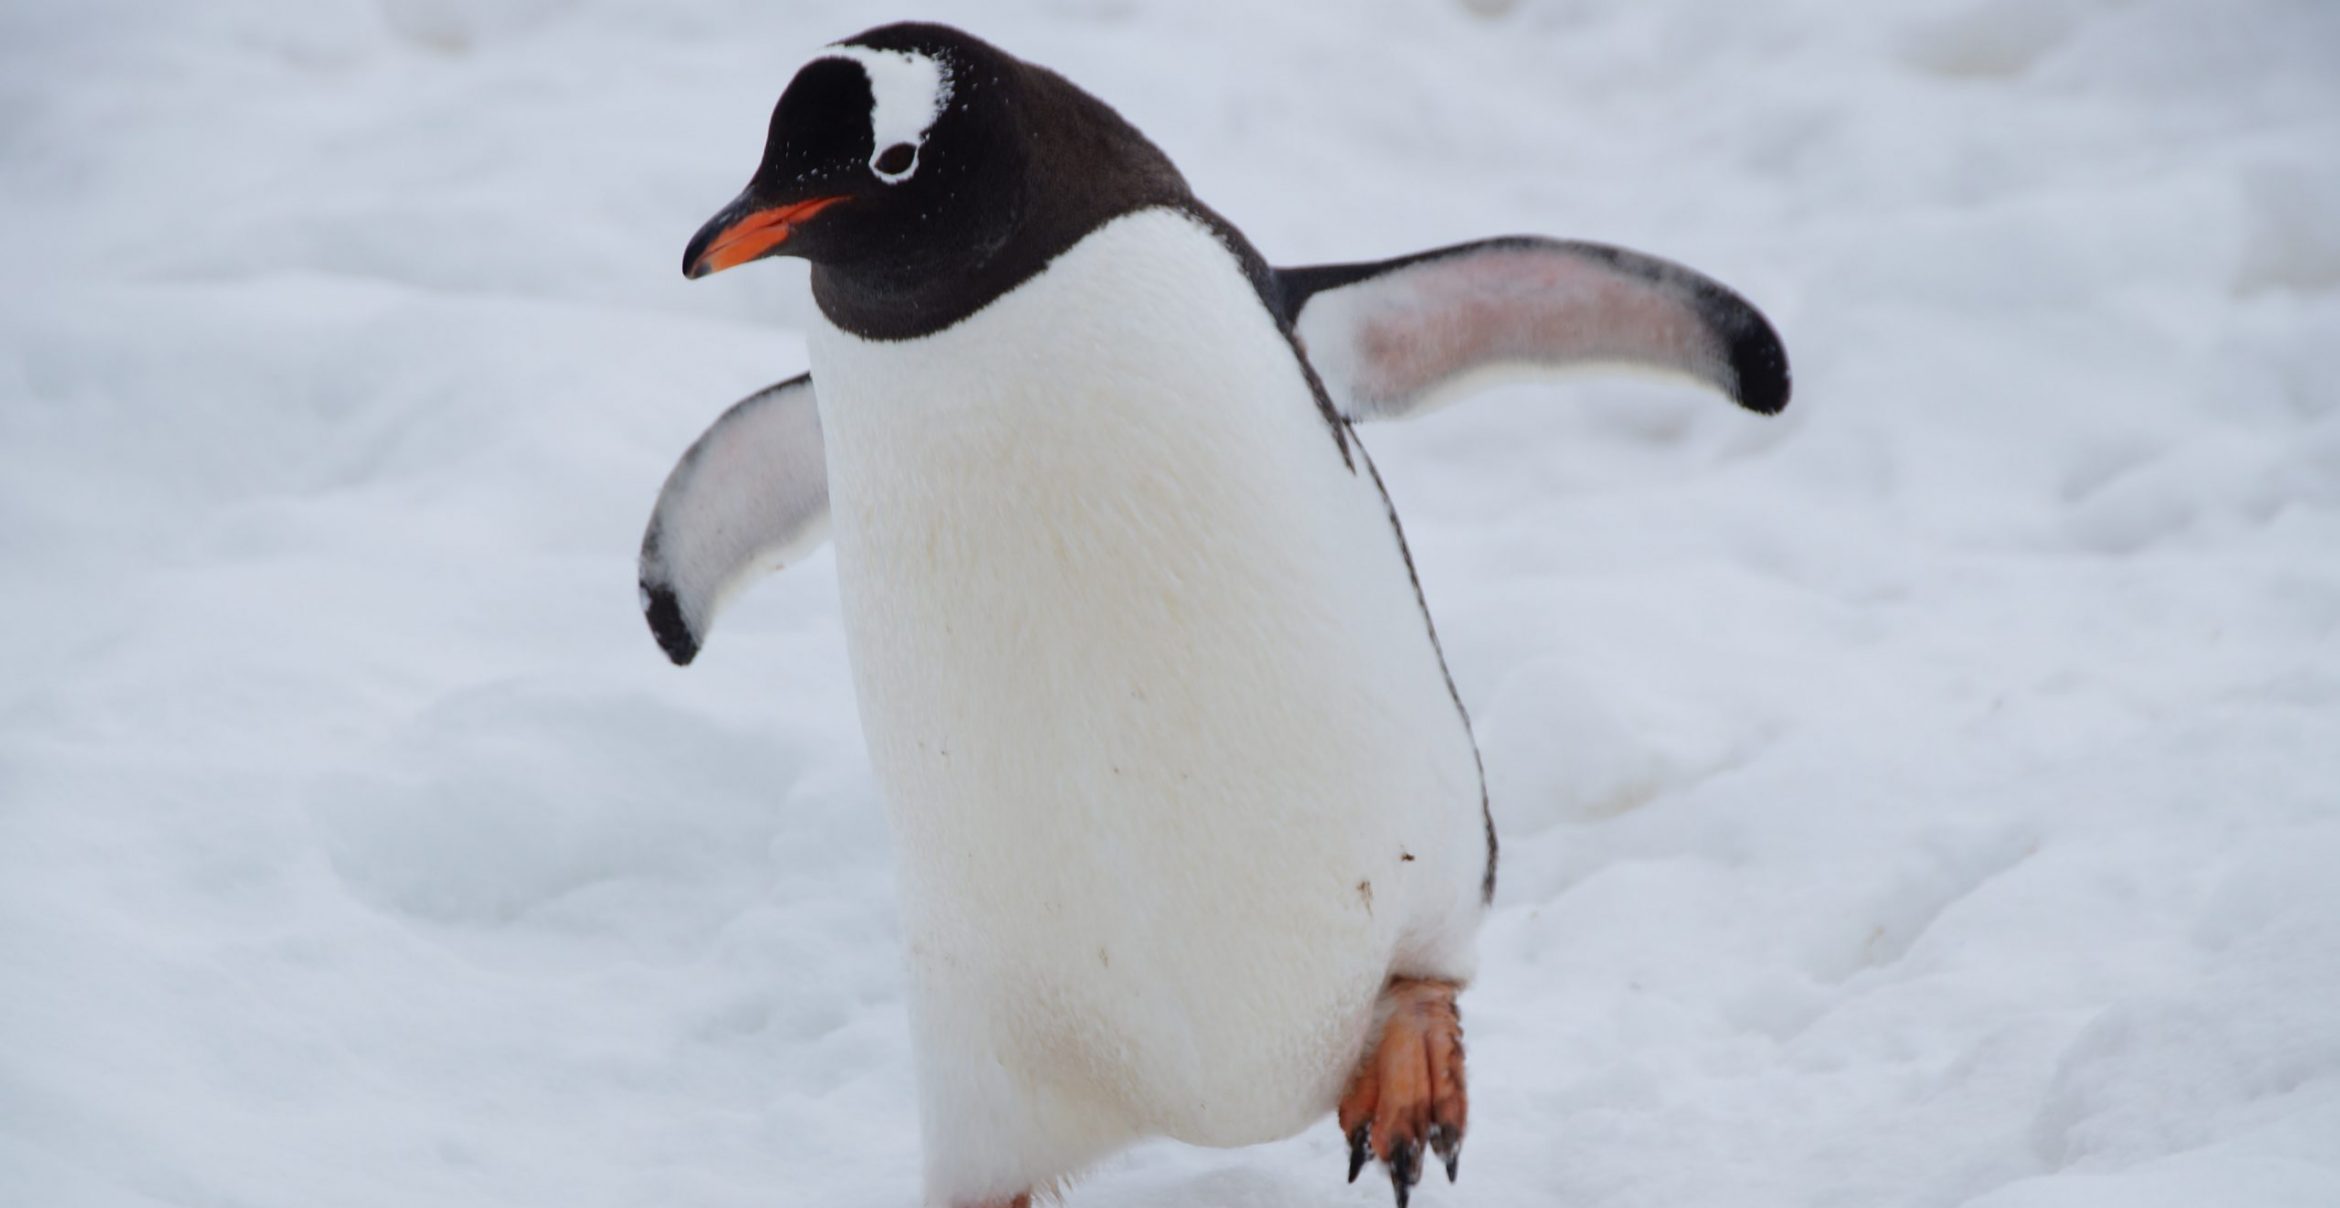 Job des Tages: Pinguine zählen in der Antarktis